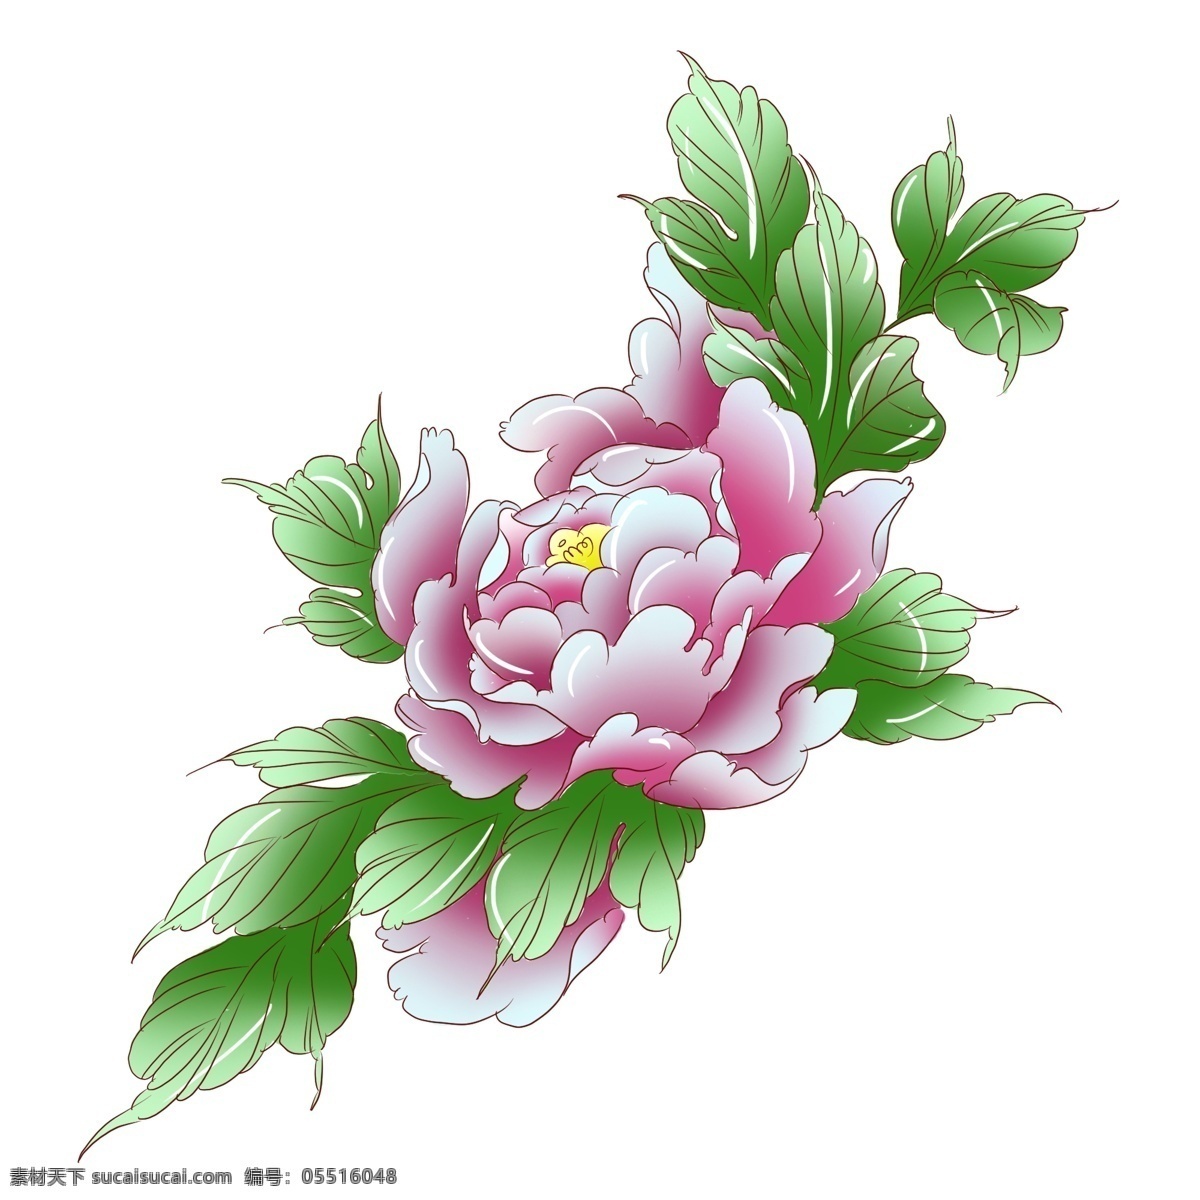 手绘 植物 粉红色 牡丹花 手绘花 手绘植物 粉红 手绘牡丹 粉红牡丹